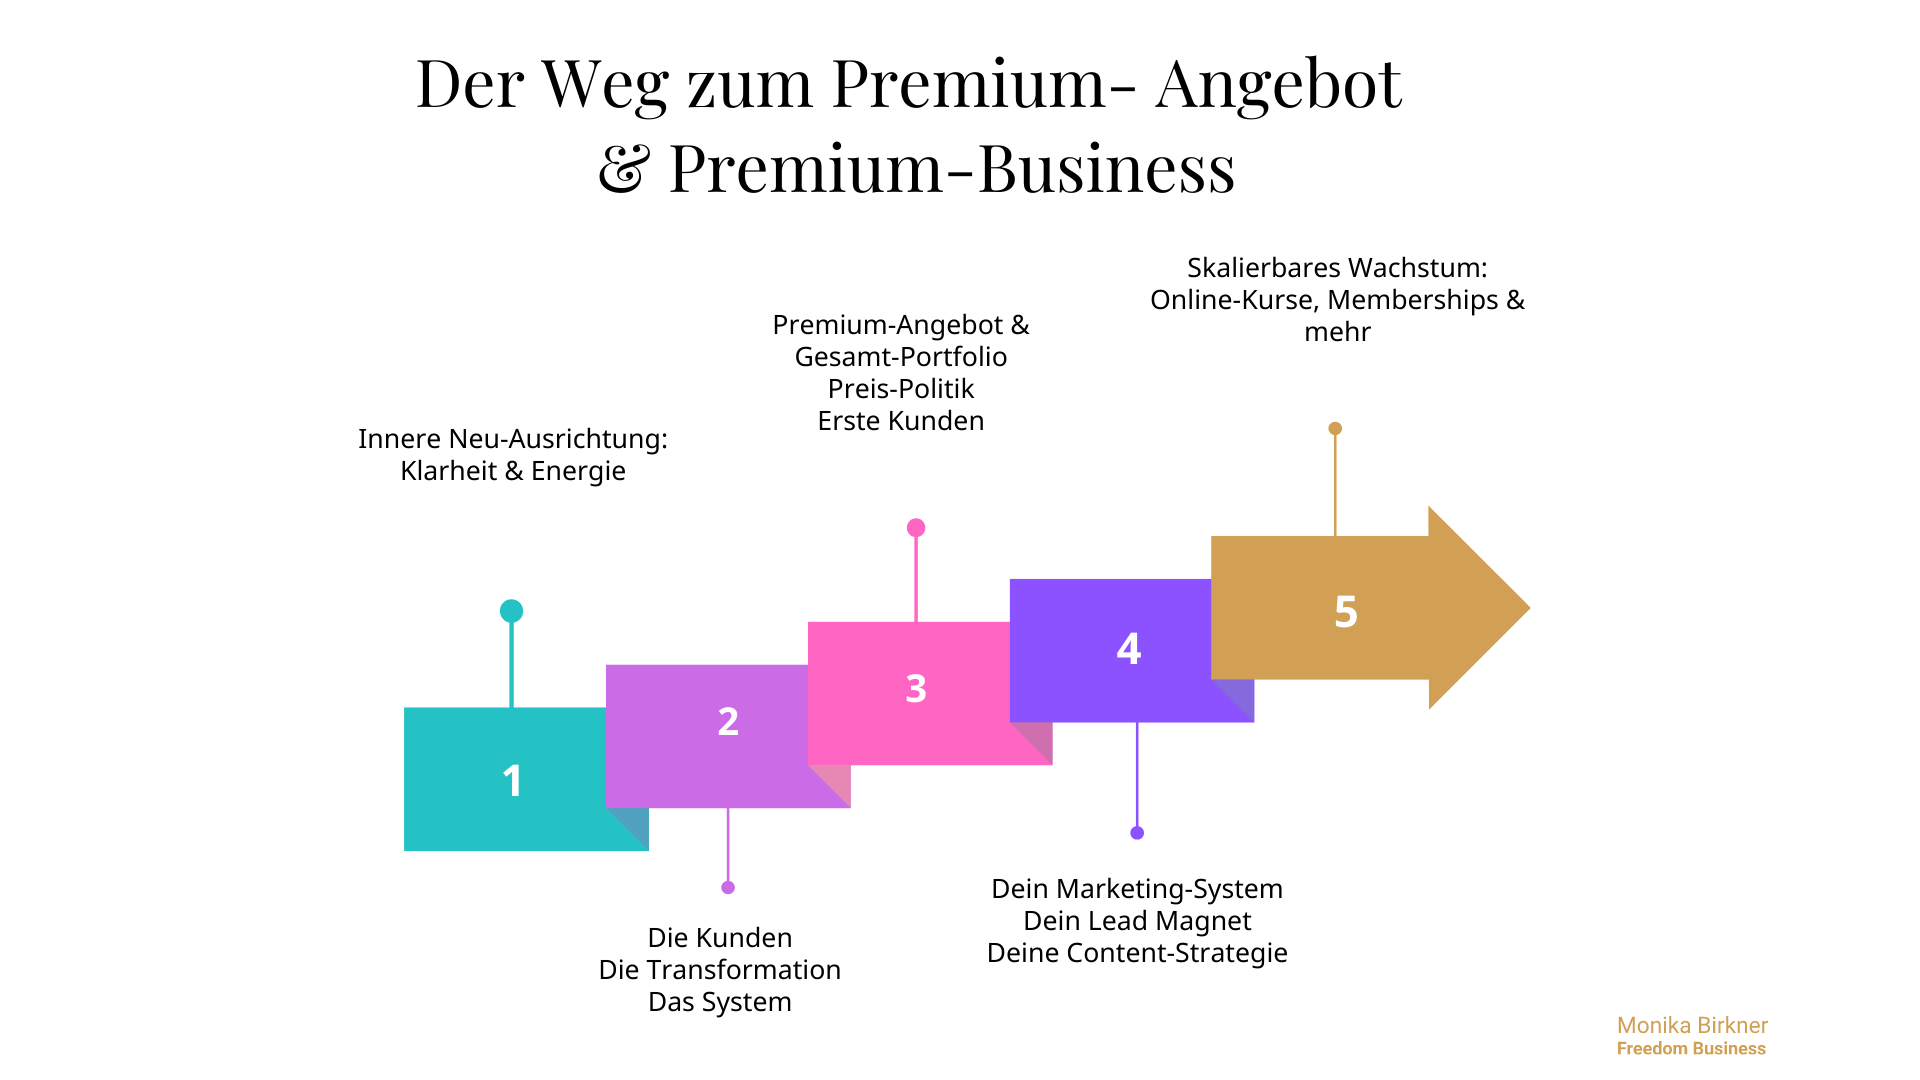 Der Weg zum Premium-Business: 5 Stufen, wie im folgenden Text beschrieben